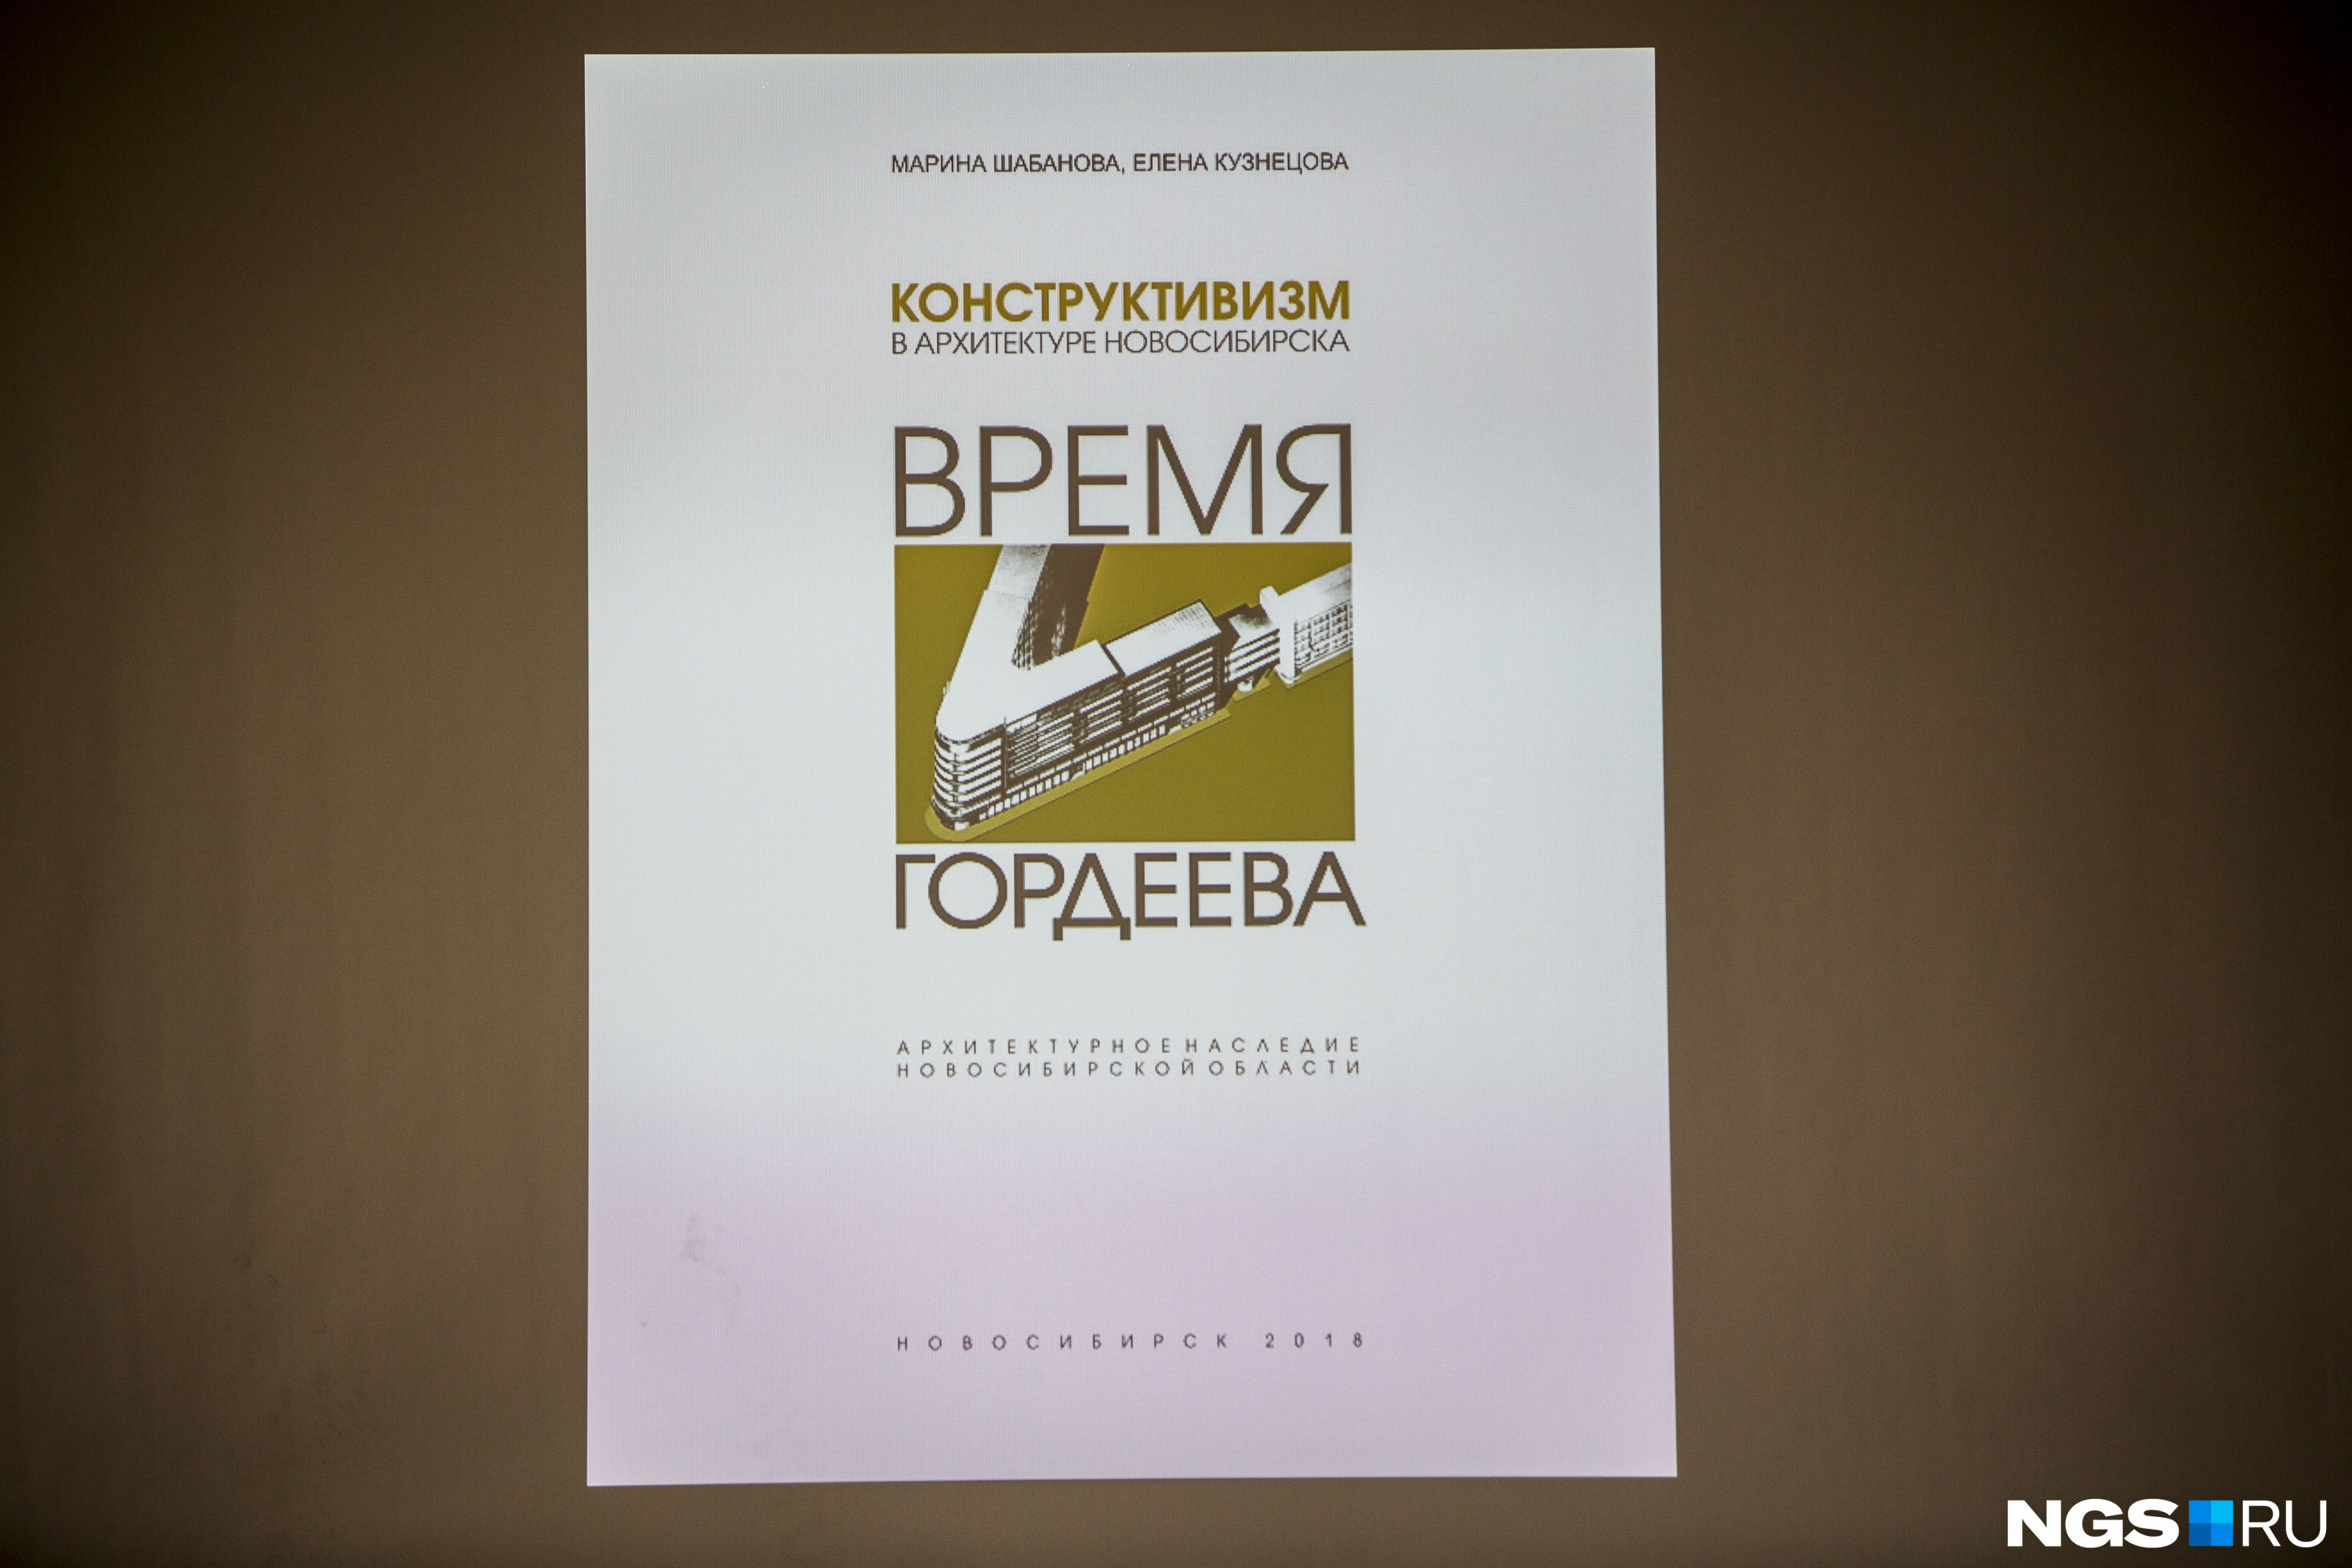 Макет обложки готовящегося издания про архитектора Бориса Гордеева